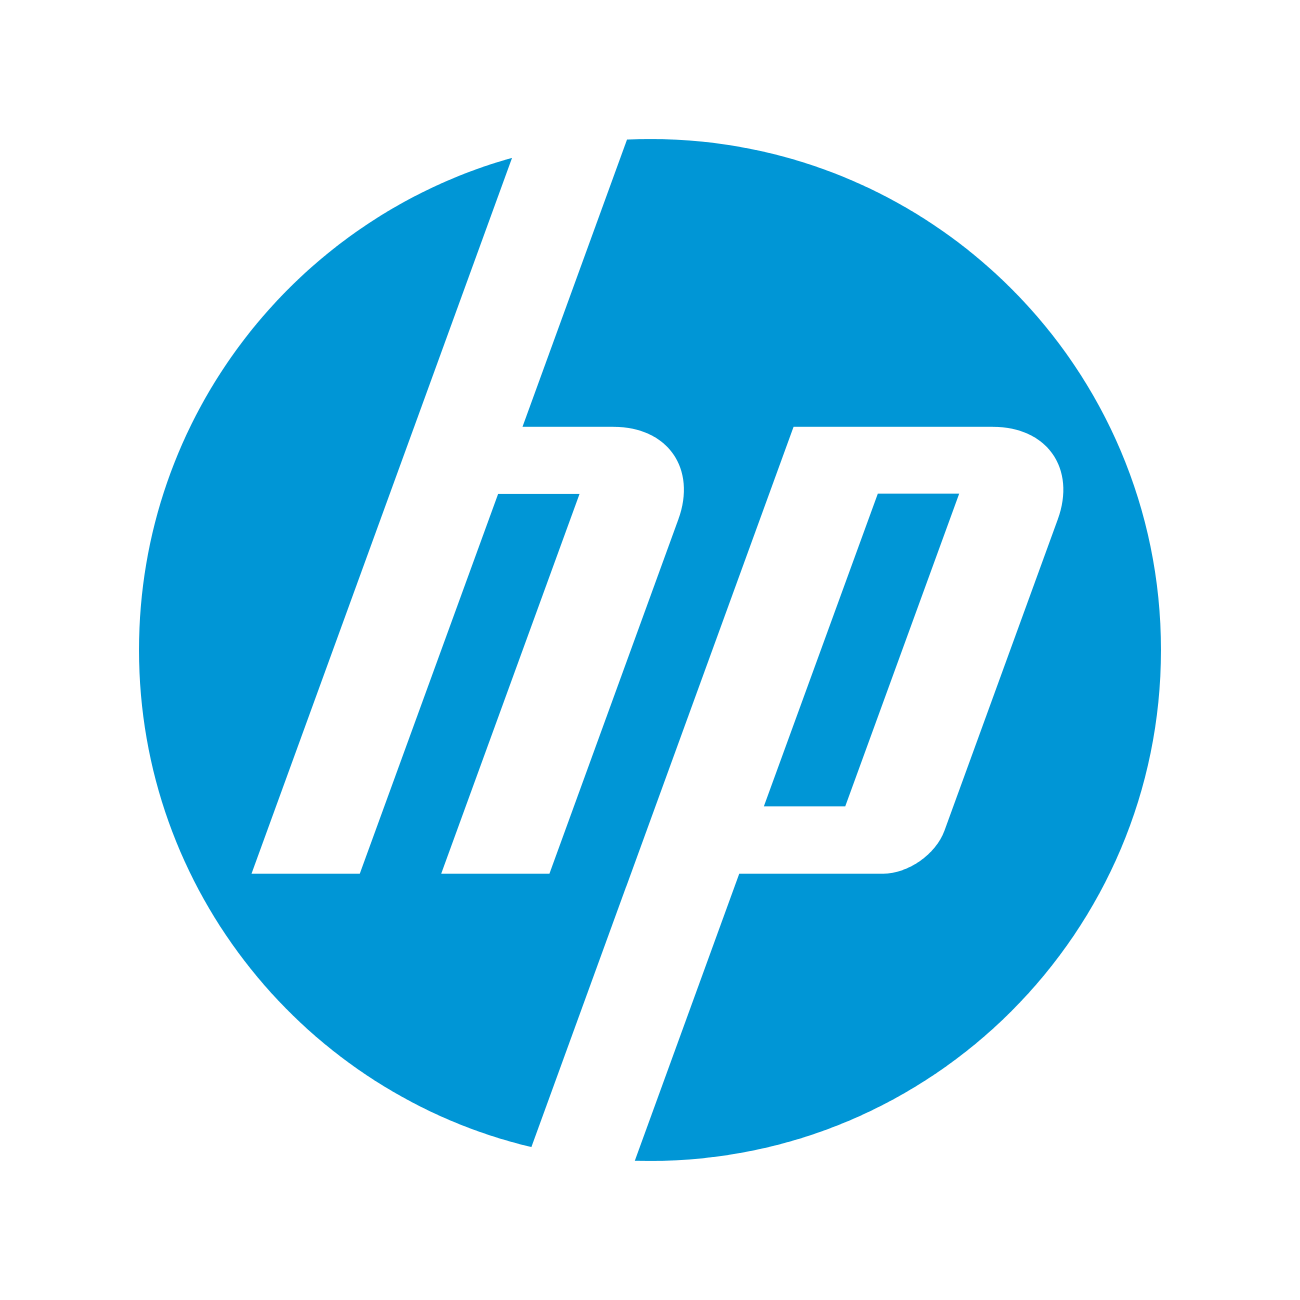 HP Care Pack - Post Warranty - 1 Year - Warranty